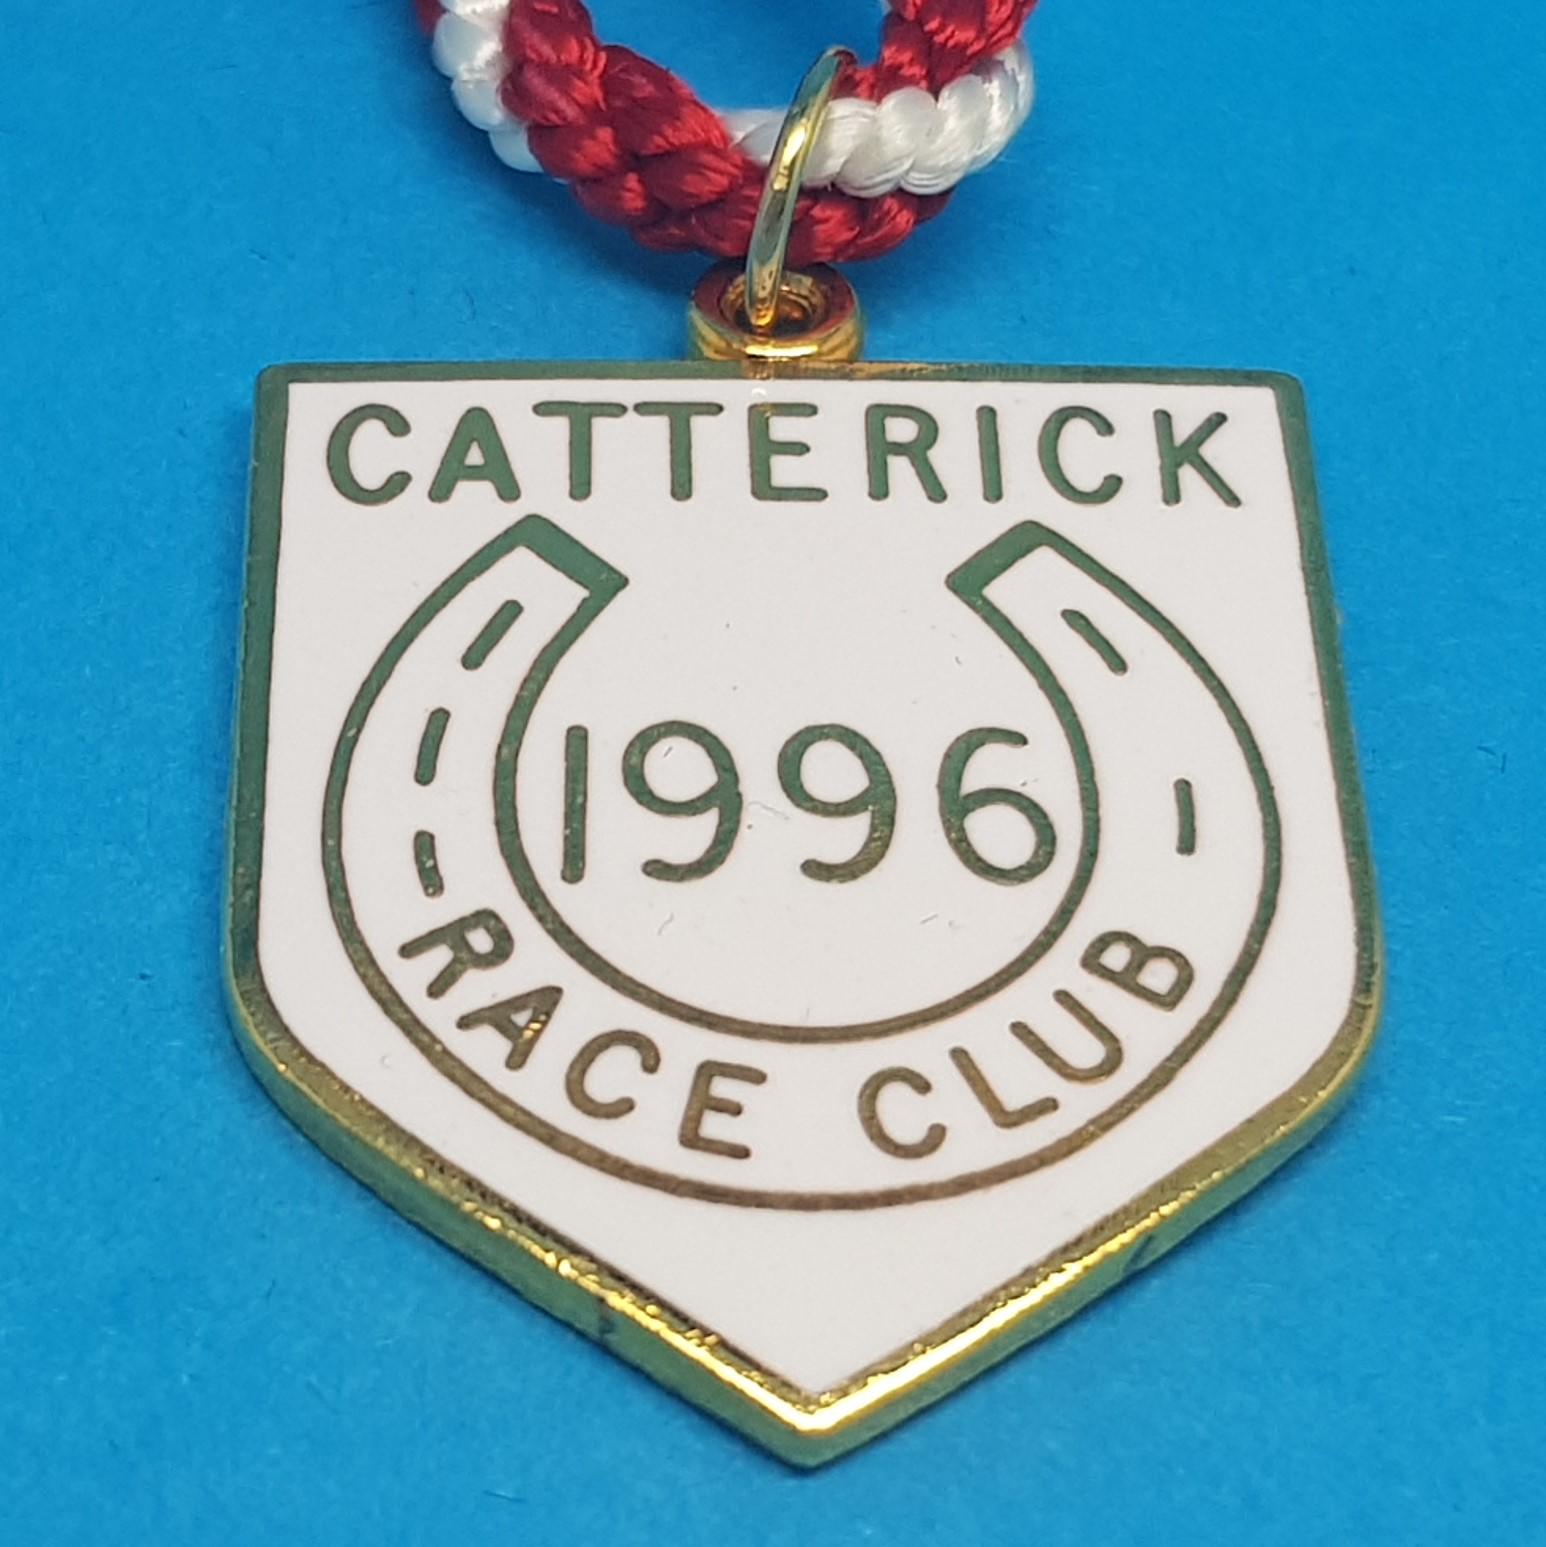 Catterick 1996 Ladies